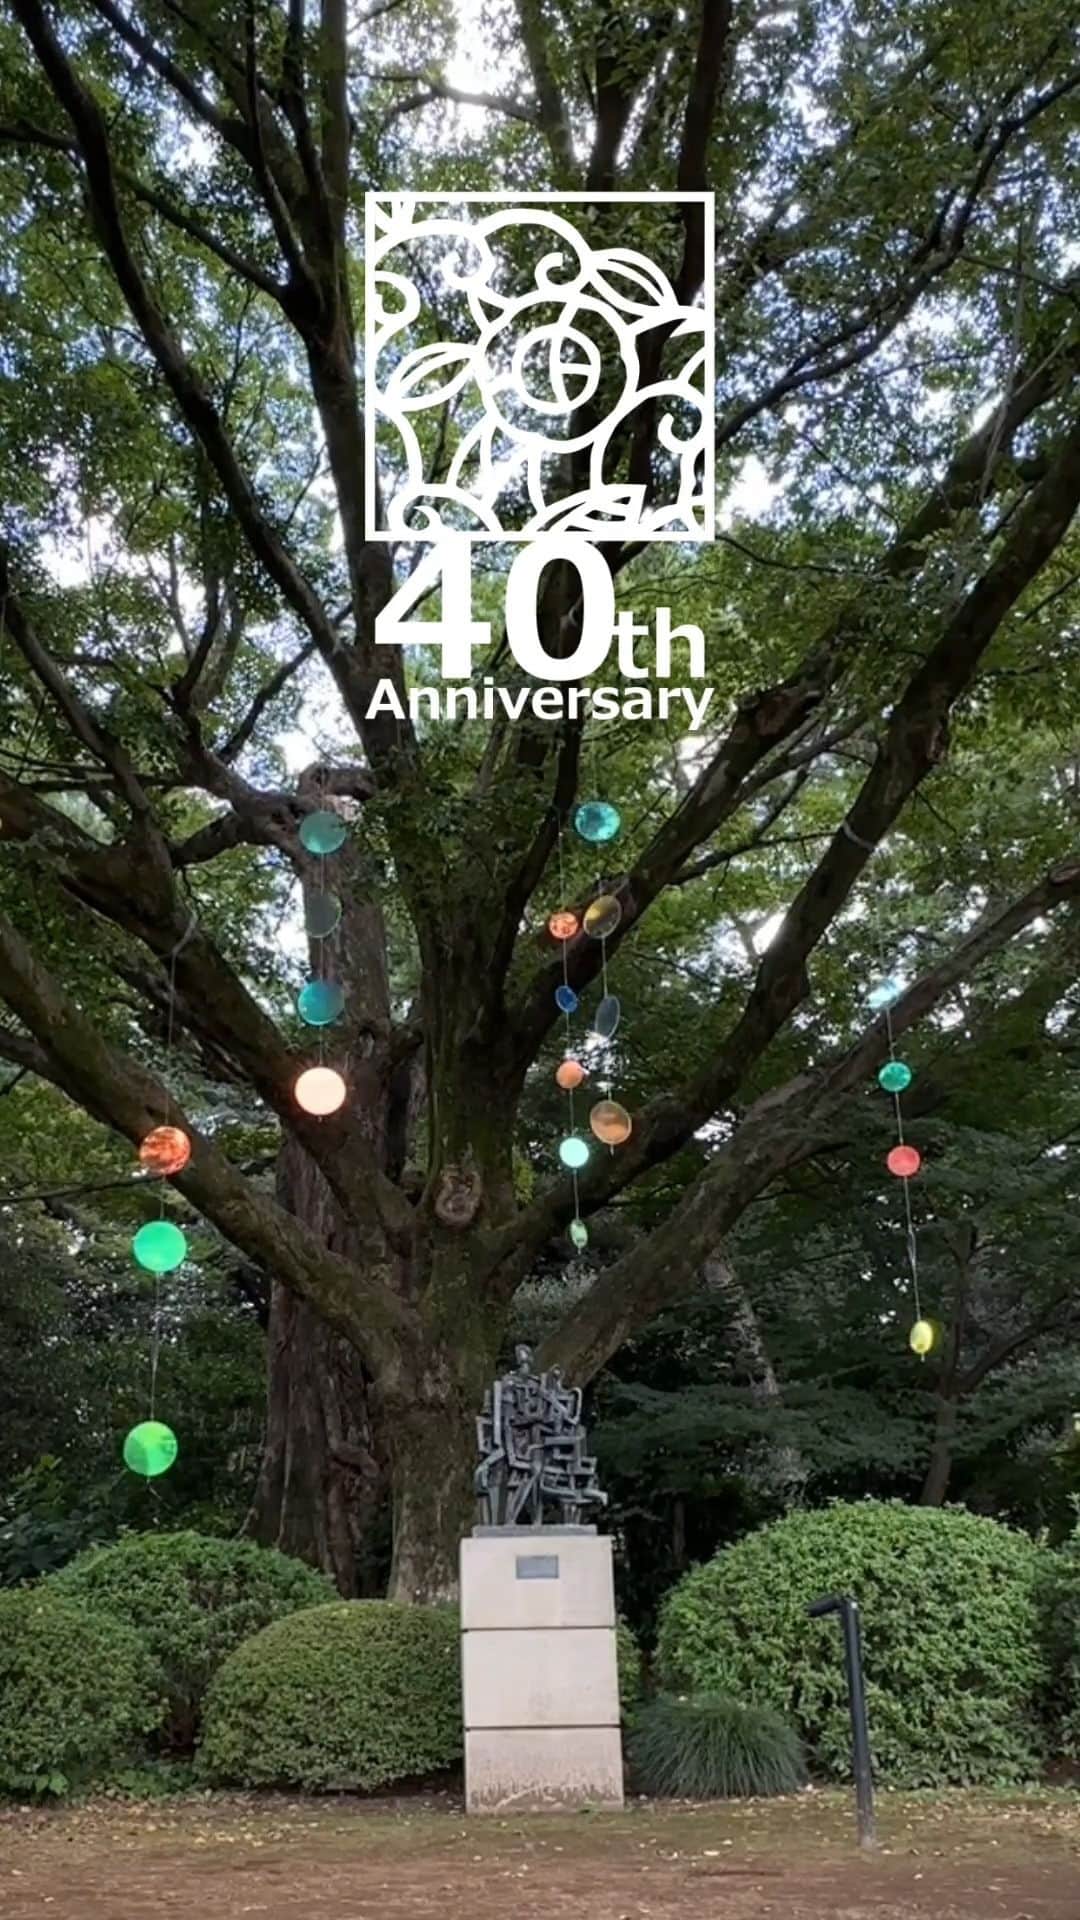 東京都庭園美術館のインスタグラム：「\ ダイジェストムービー公開中 / #東京都庭園美術館 では10/1の開館40周年記念日に、TEIEN 40th Anniversary festival「ジャズとダンスの祝宴 マチネ」を開催しました!  ジャズバンドによる生演奏にのせて、スローからアップテンポまで、ダンスで時代を駆け巡りました。  ★2023年11月17日（金）と18日（土）には、同公演の夜のライトアップバージョンを開催予定です★  特設HPはこちら☛ https://teien40th.jp/project/231001-anniversary-festival.html  #Teien40th」